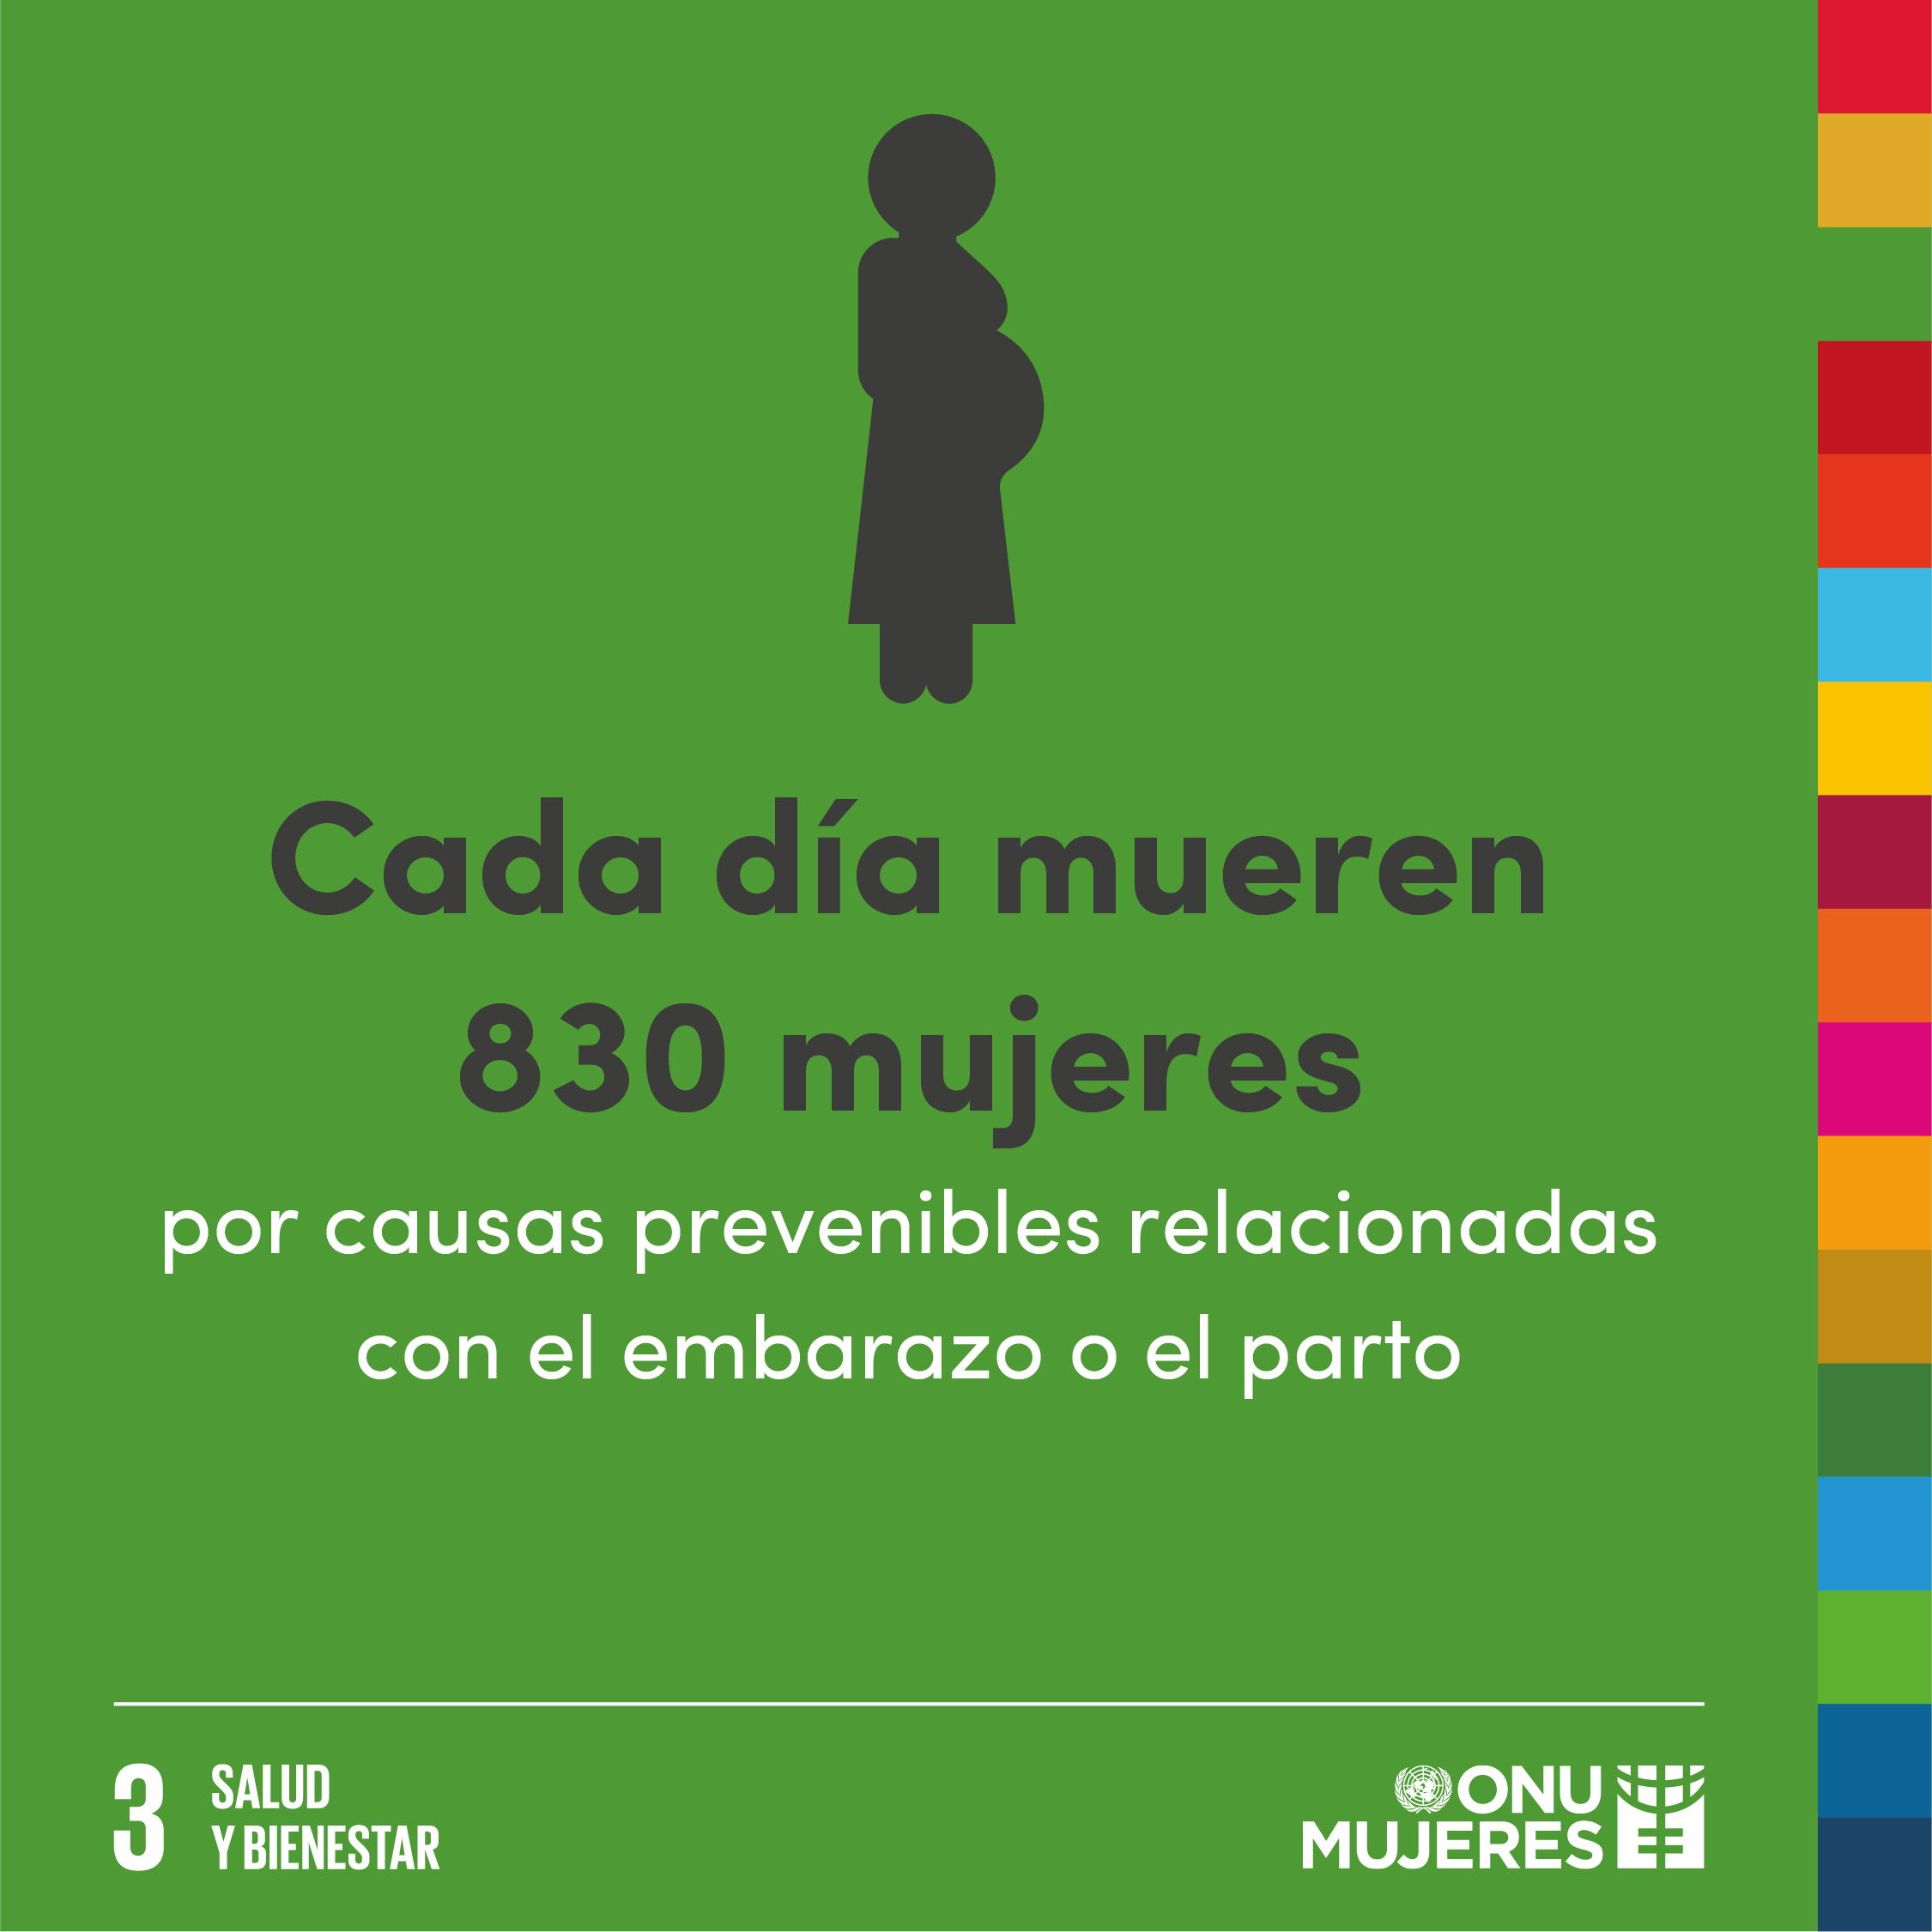 Cada día mueren 830 mujeres por causas prevenibles relacionadas con el embarazo y el parto.